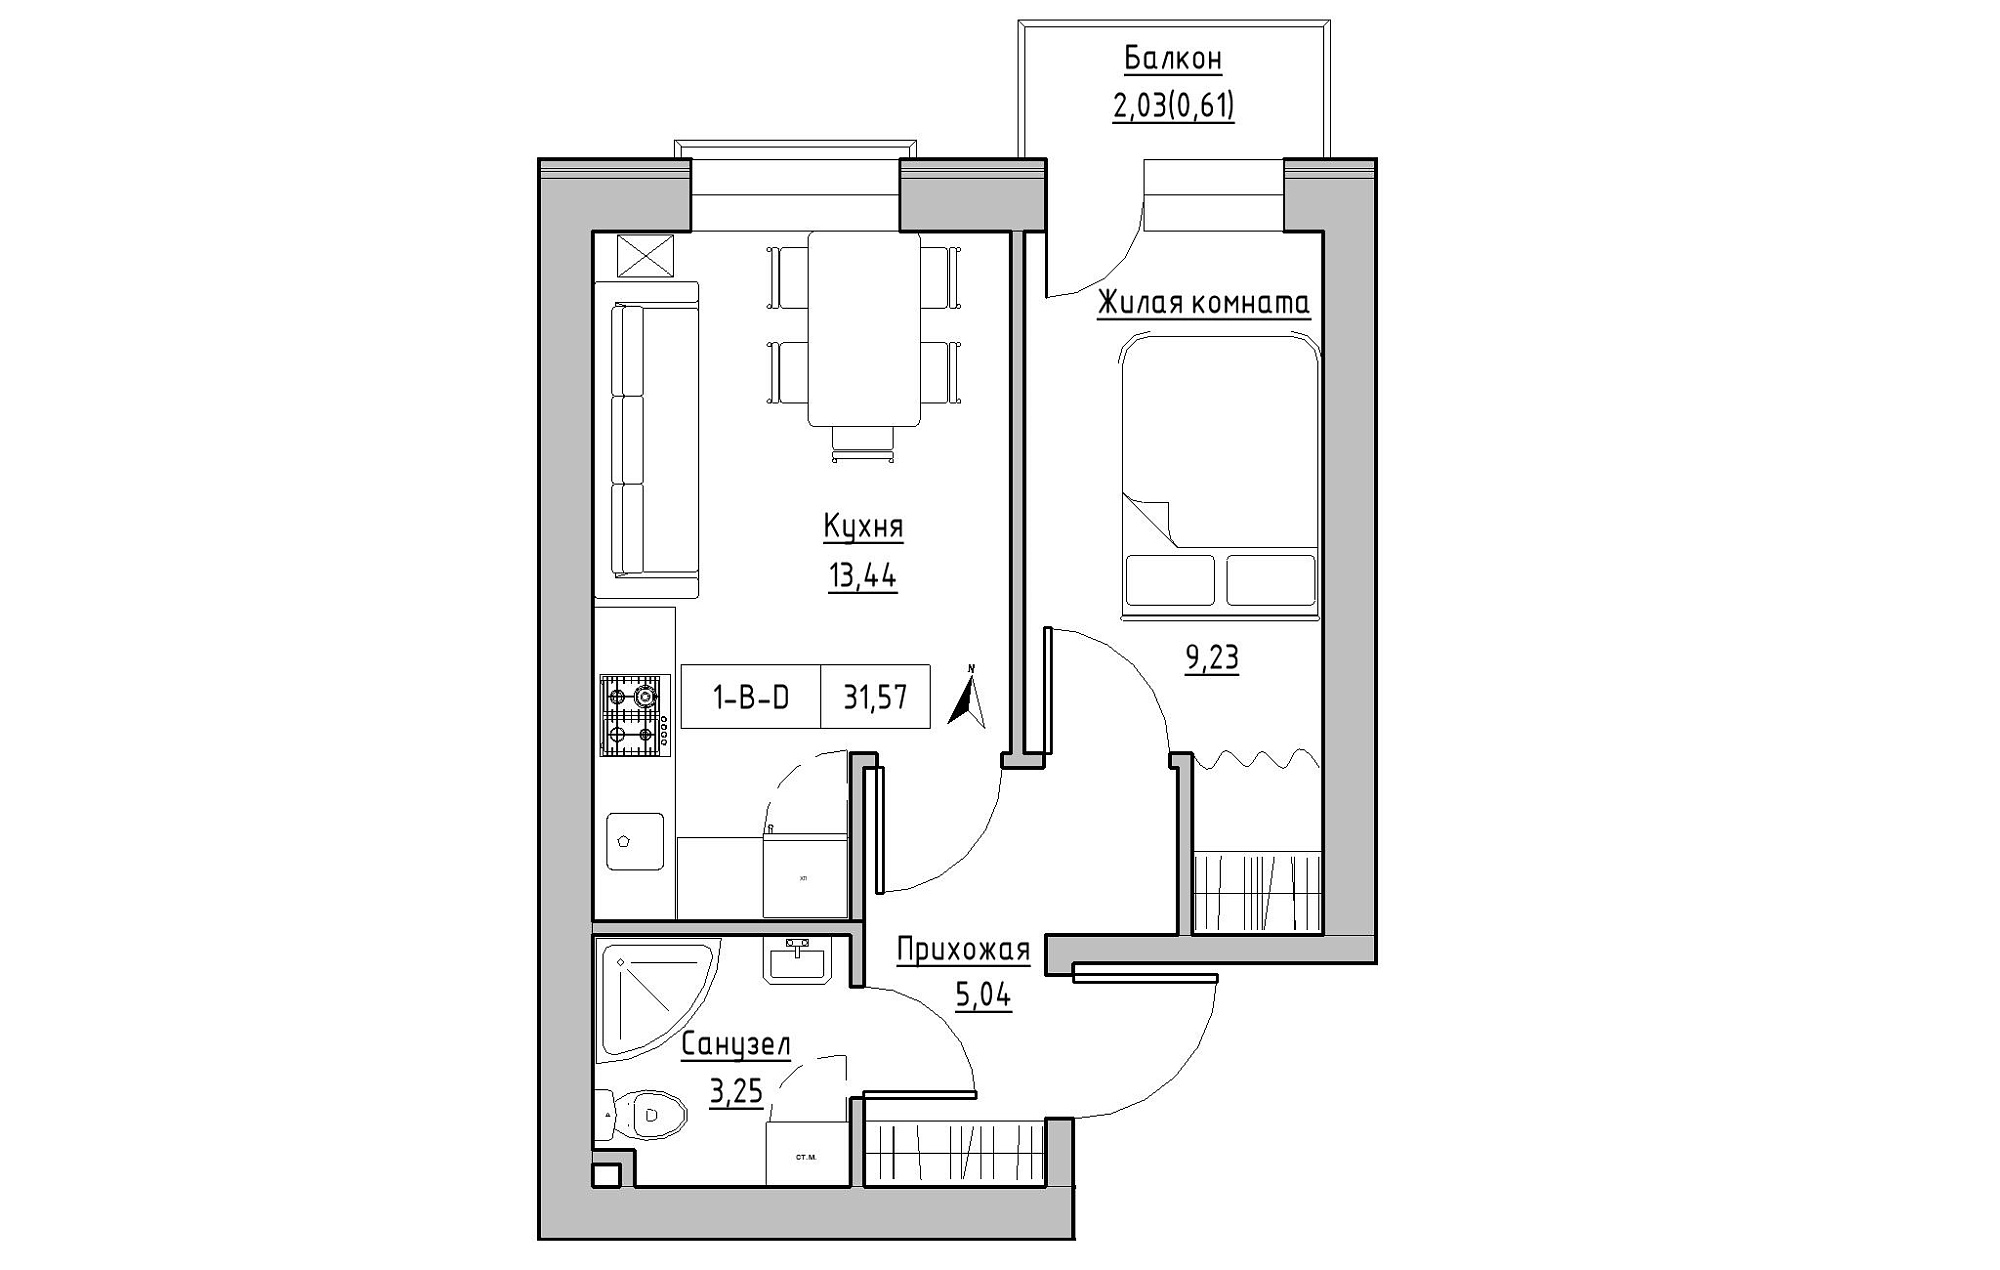 Планировка 1-к квартира площей 31.57м2, KS-019-02/0013.